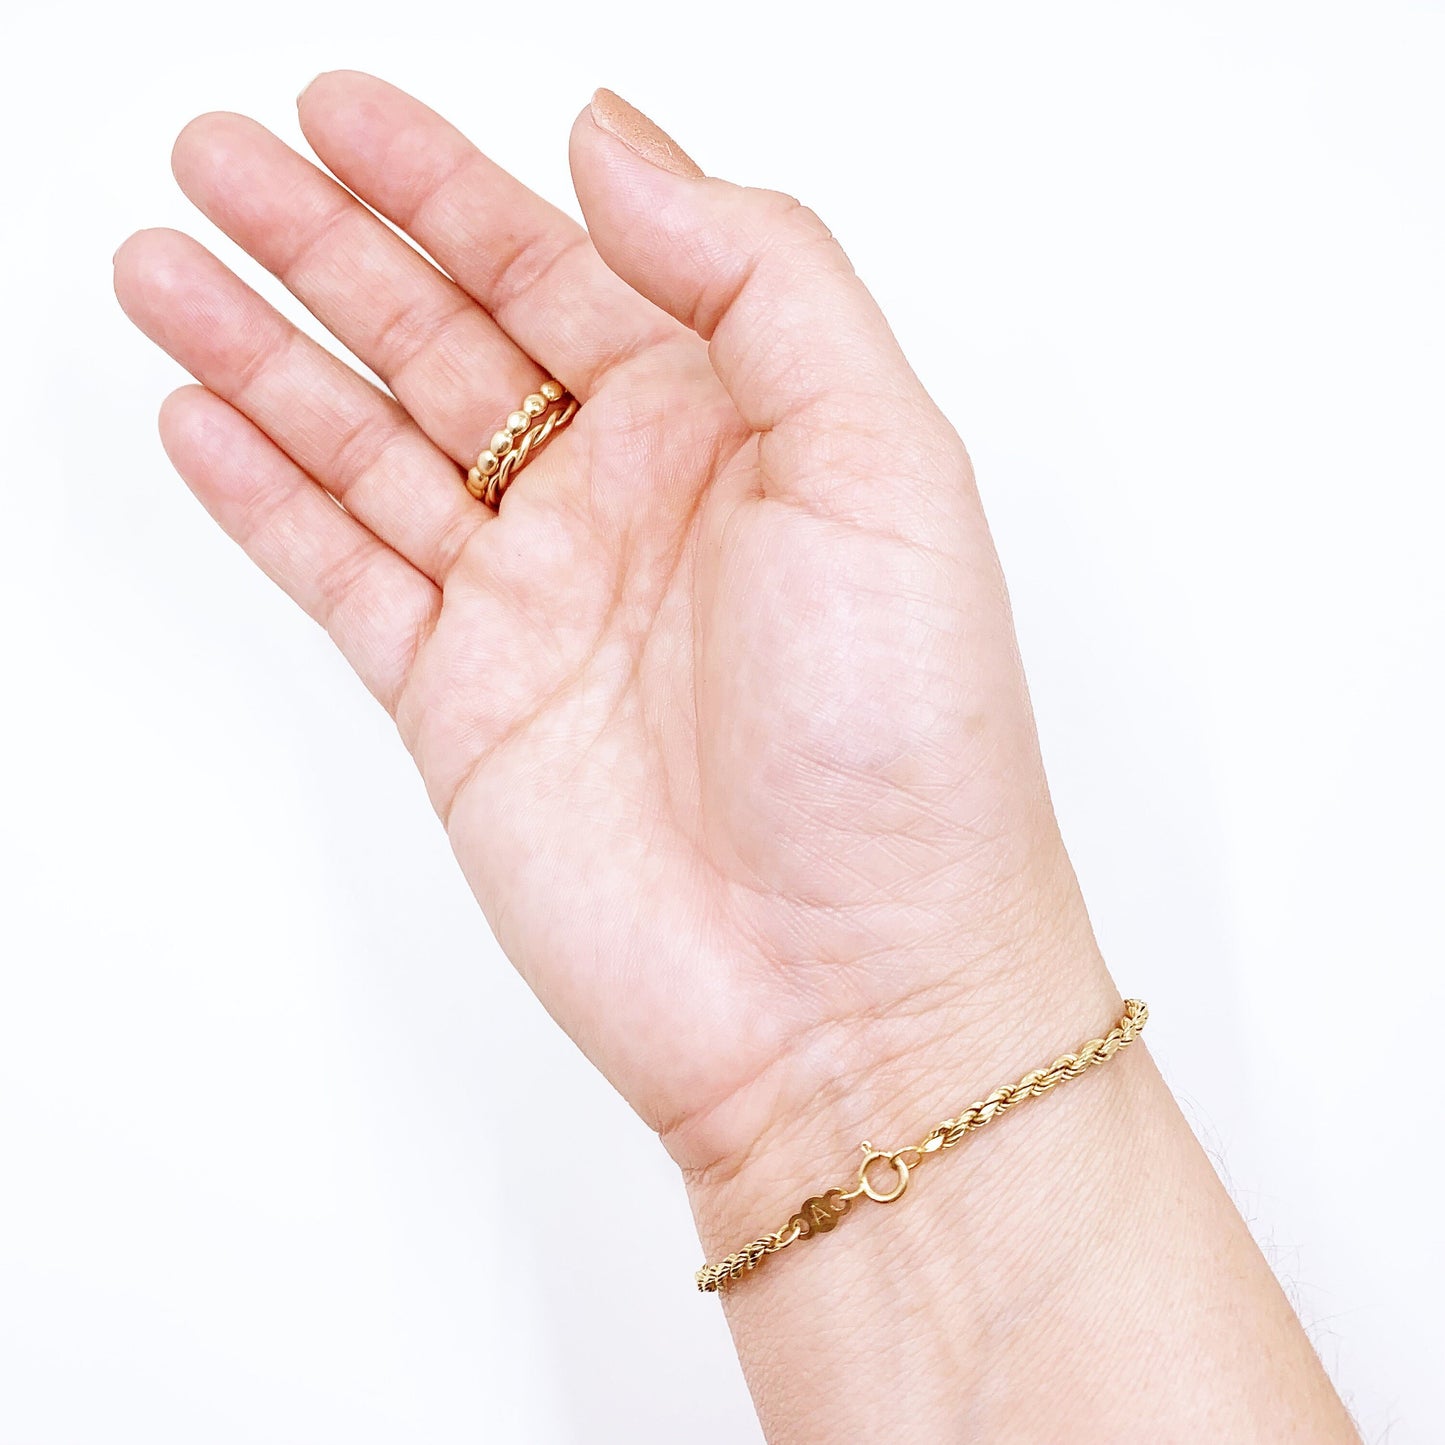 Vintage 14k Gold Rope Bracelet | 7 6/8 inch Gold Bracelet | 2.5 mm Bracelet | Single Rope Bracelet